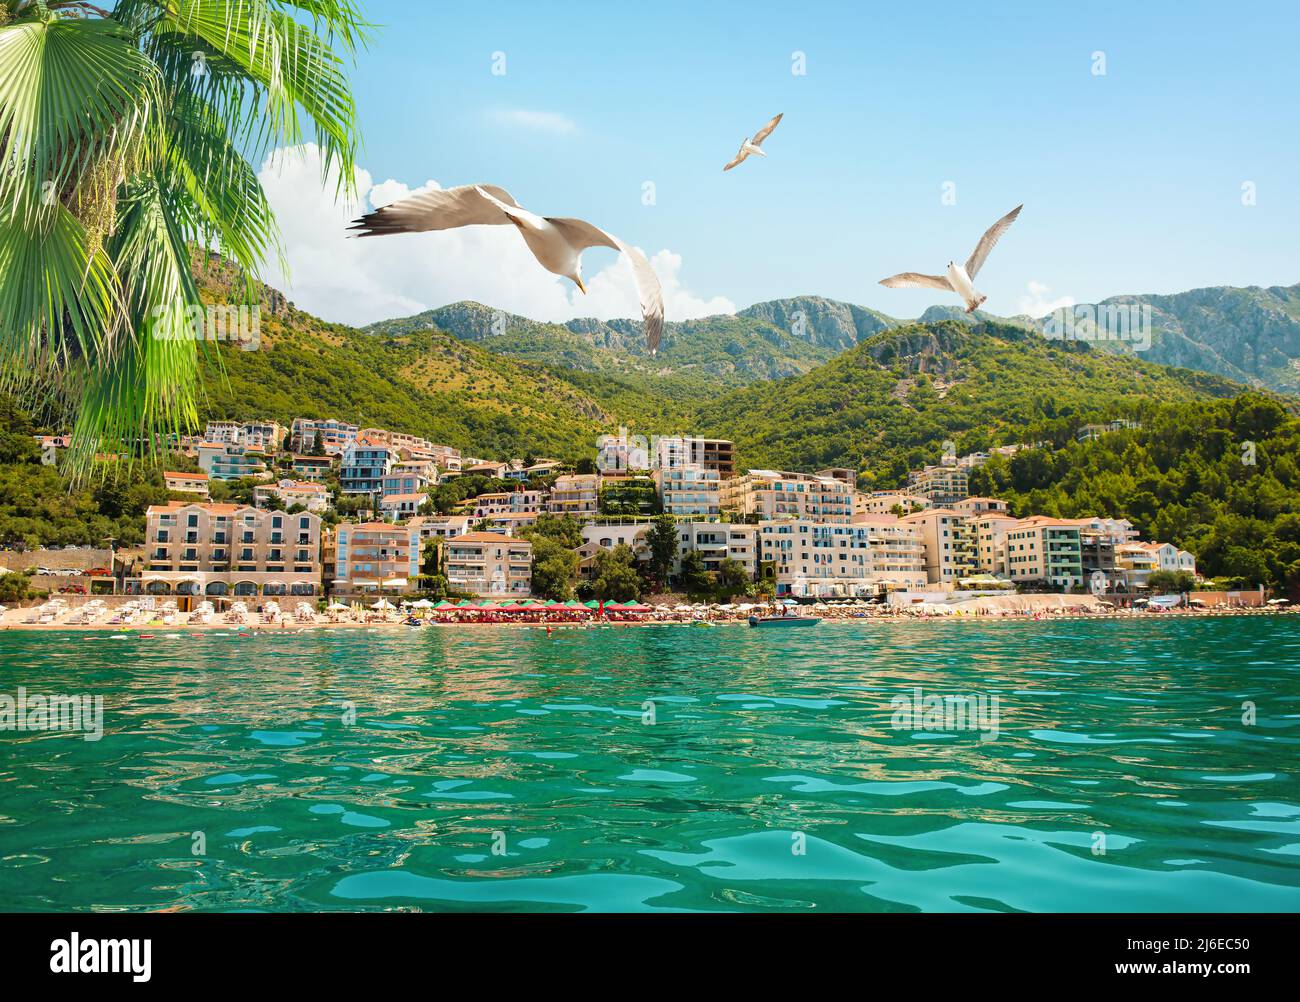 Vista sobre Sveti Stefan y su playa en verano llena de turistas Foto de stock